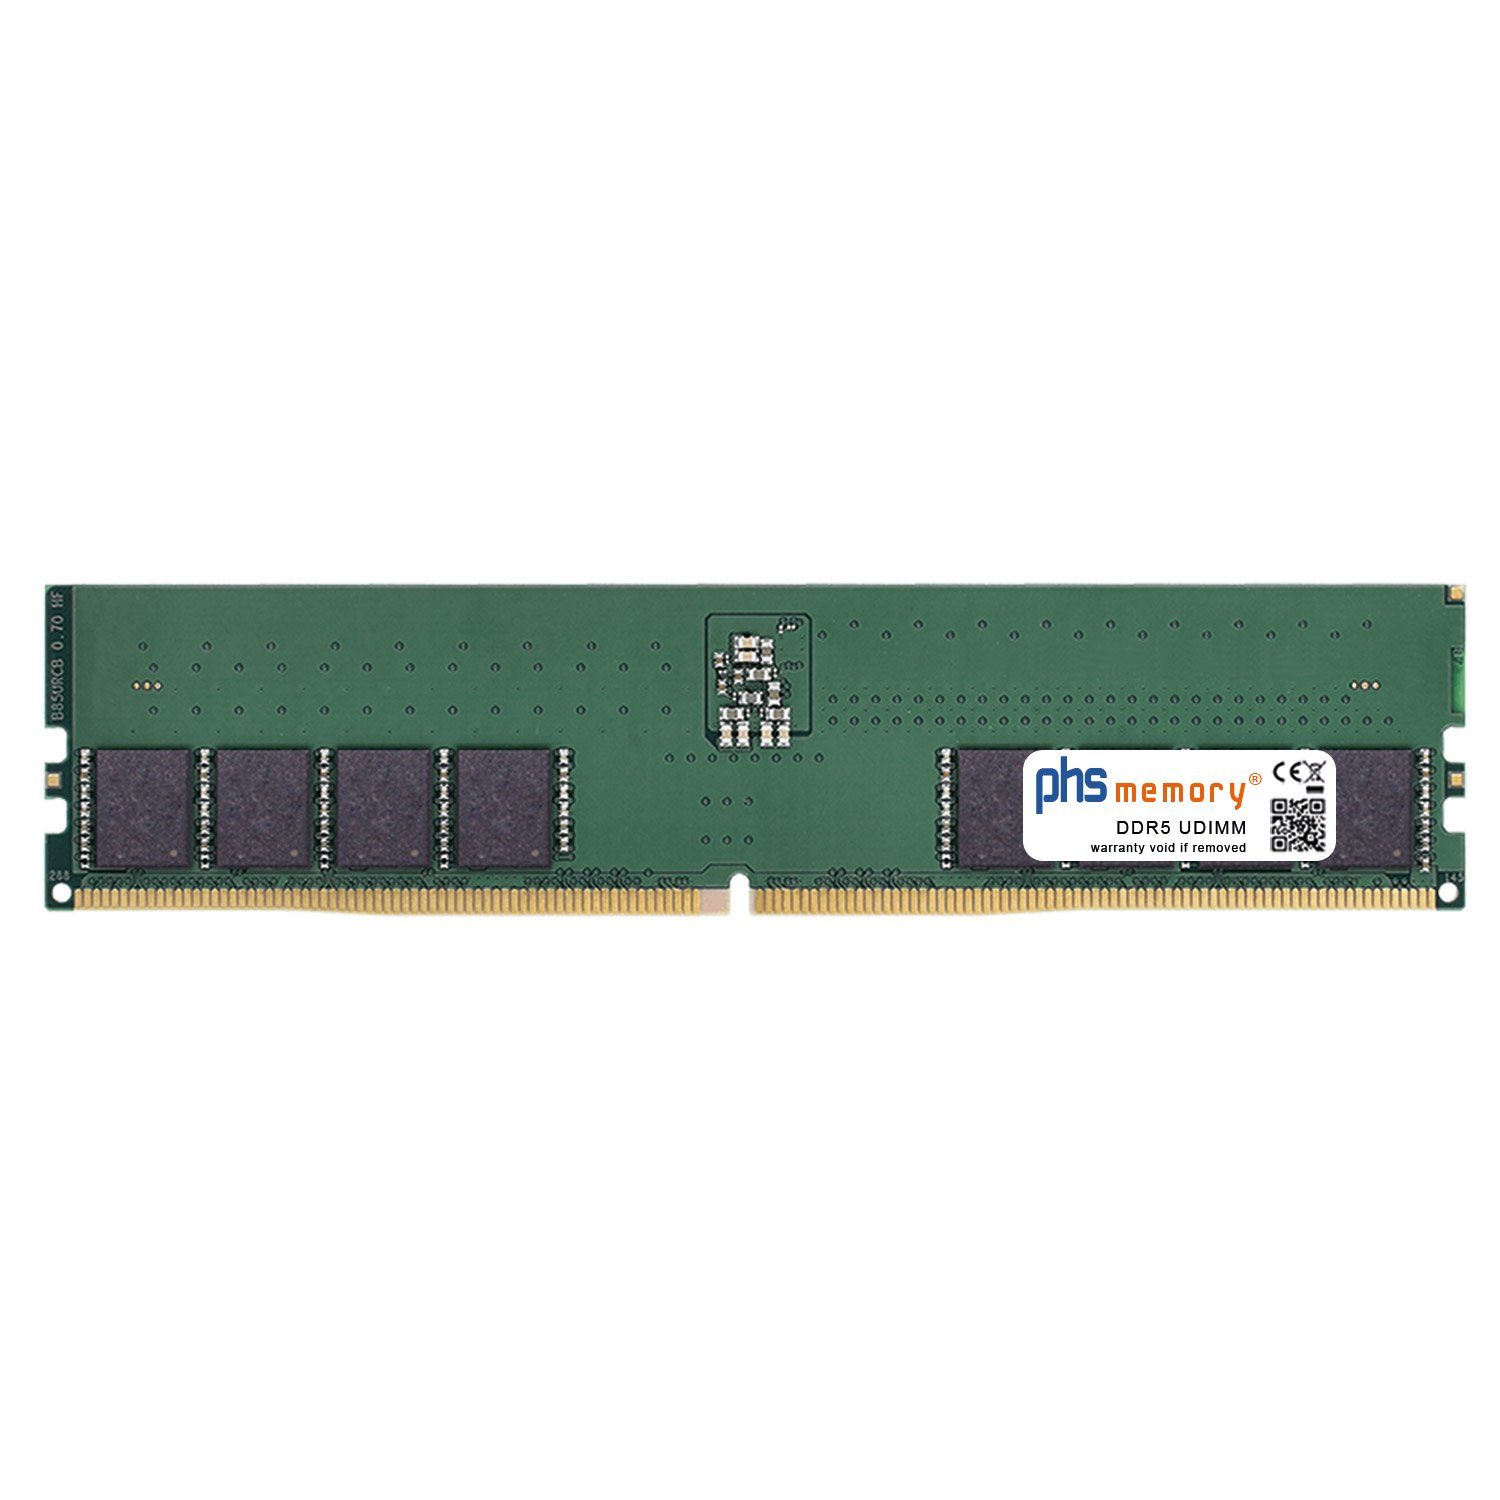 PHS-memory RAM für Captiva Highend Gaming R73-982 Arbeitsspeicher